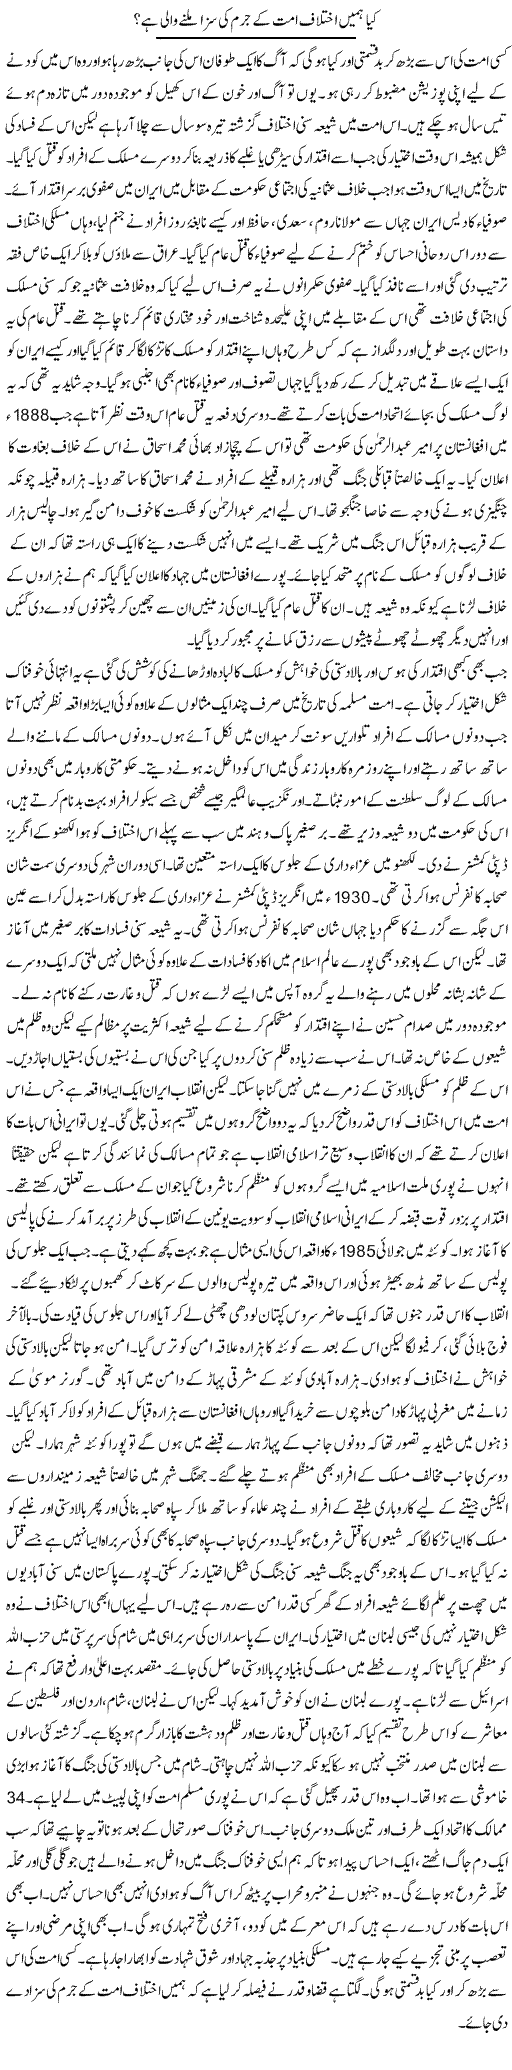 Kia Humain Ikhtilaf Ummat Ke Jurm Ki Saza Milne Wali Hai? | Orya Maqbool Jan | Daily Urdu Columns